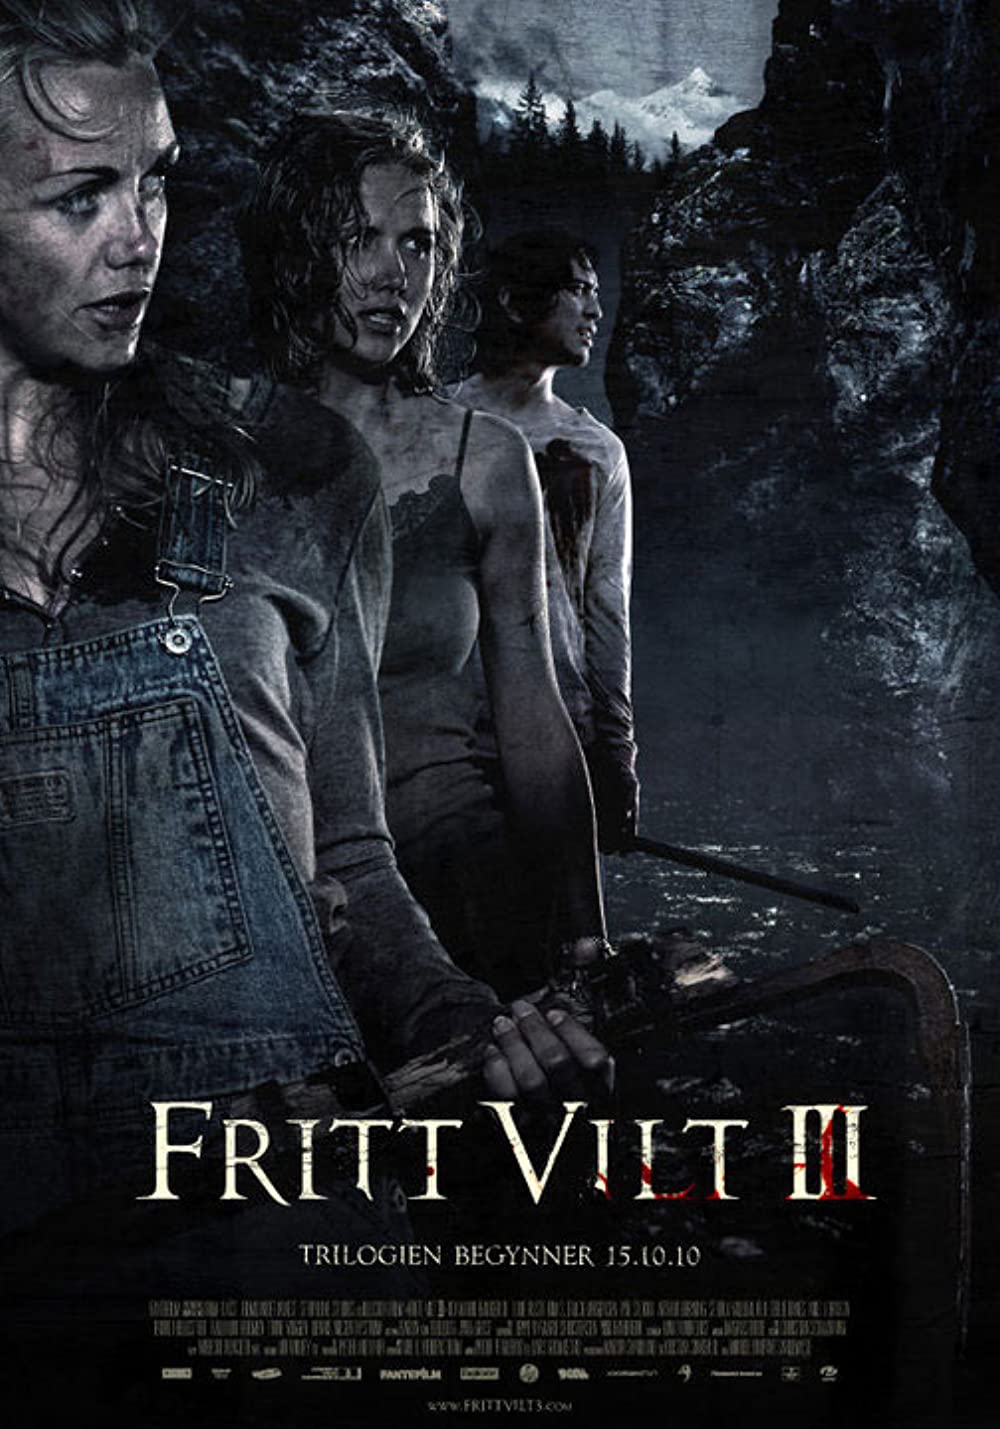 Fritt vilt III Movie Download - Fritt Vilt Iii Hd, Dvd